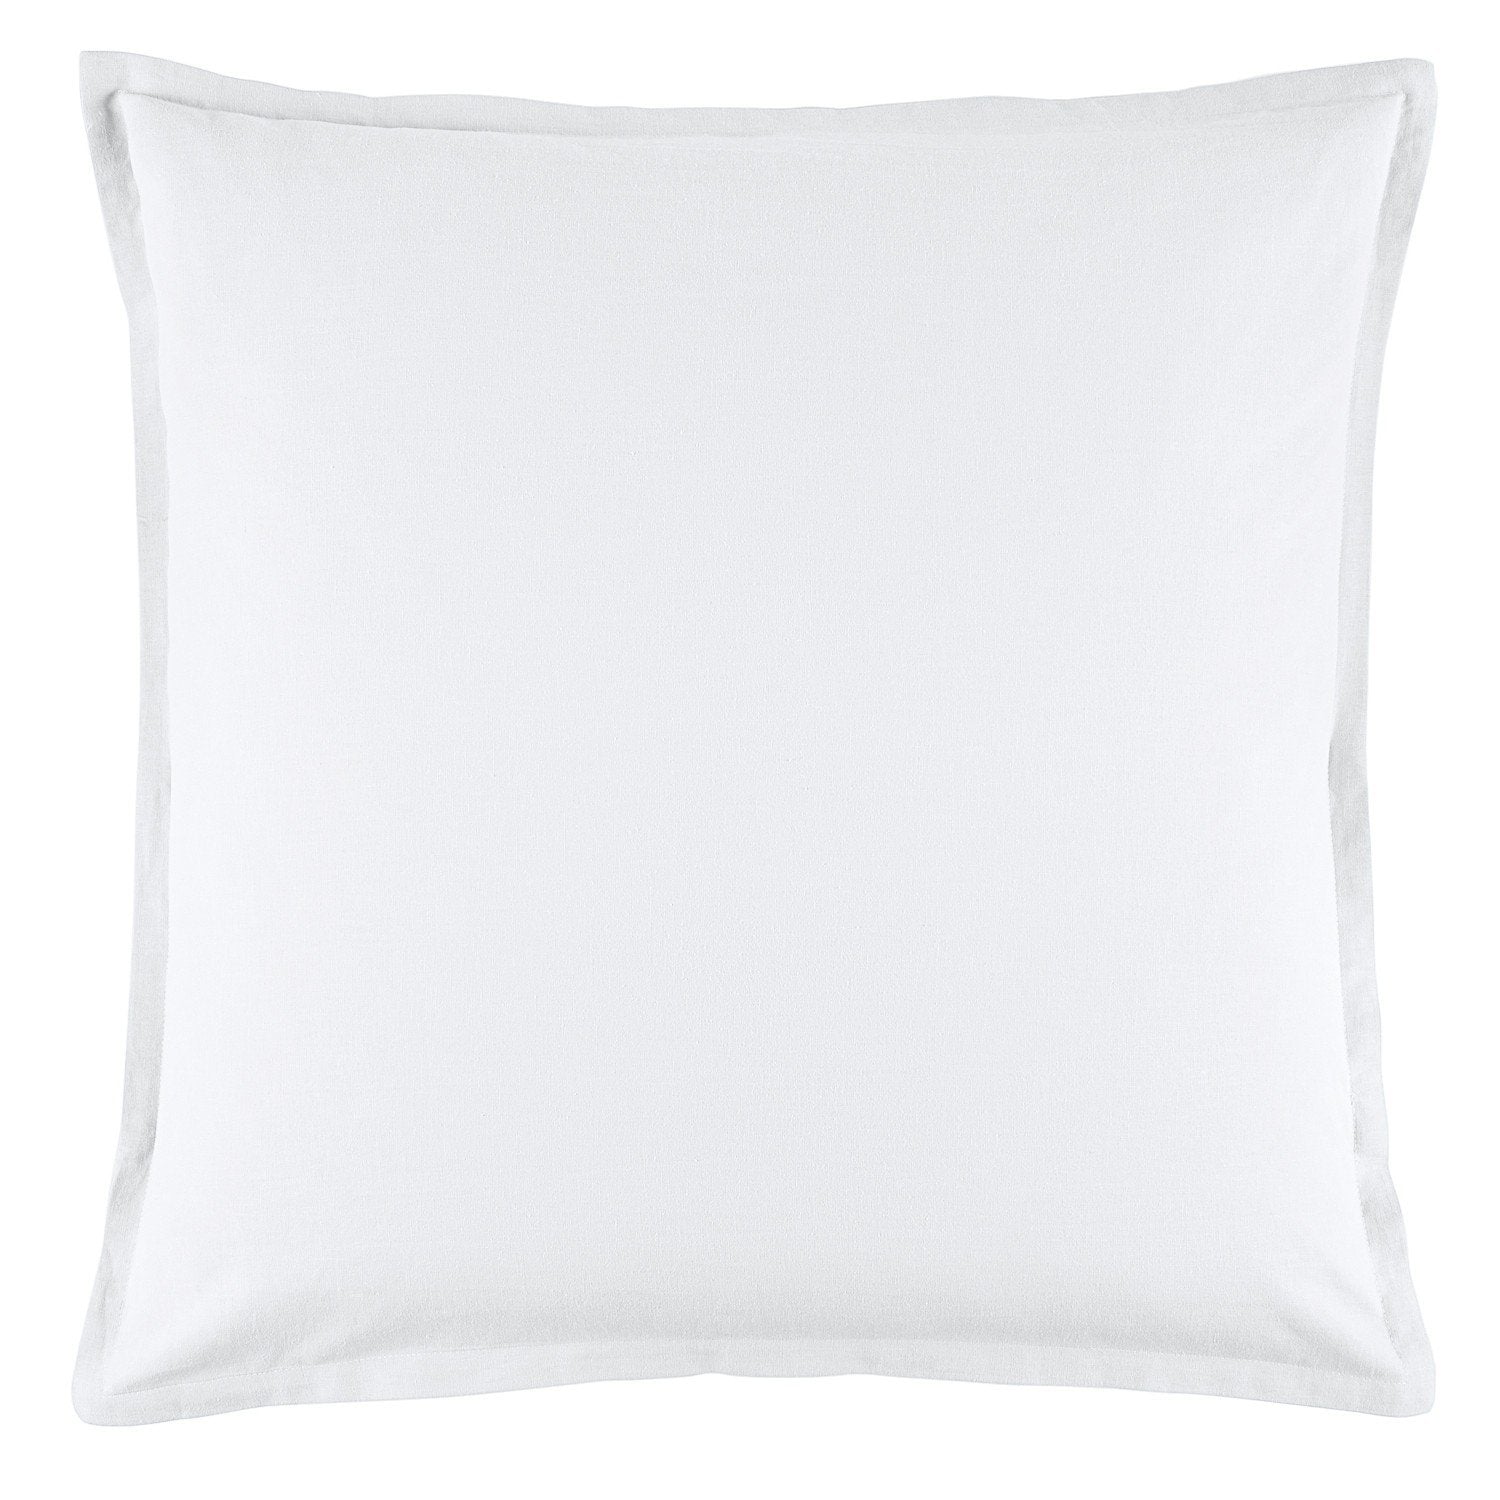 Wellington White European Pillowcase by Bianca